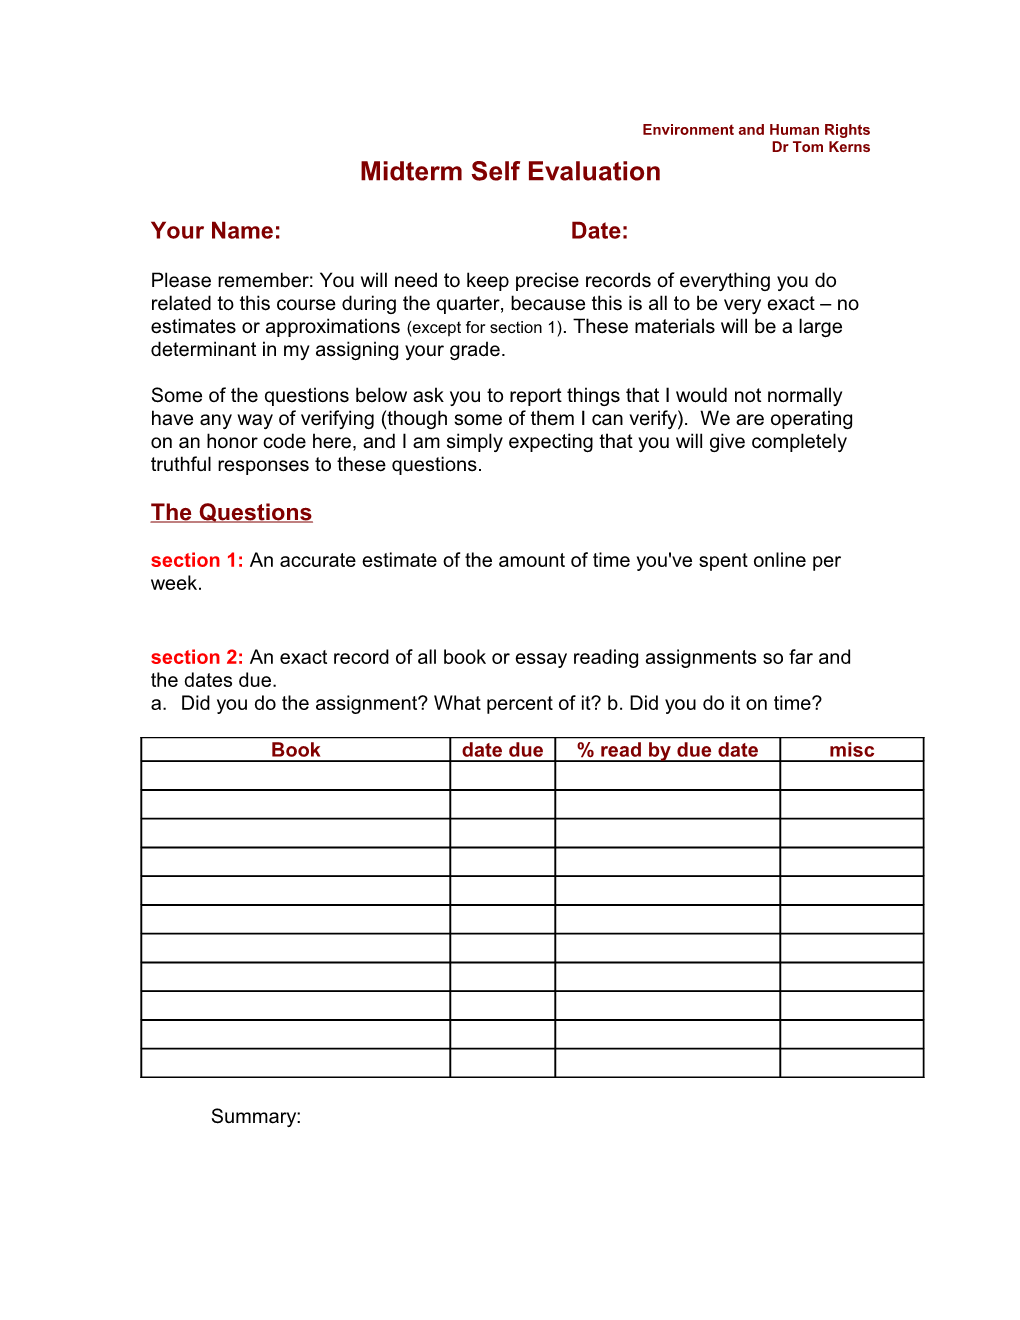 Midterm Self Evaluation